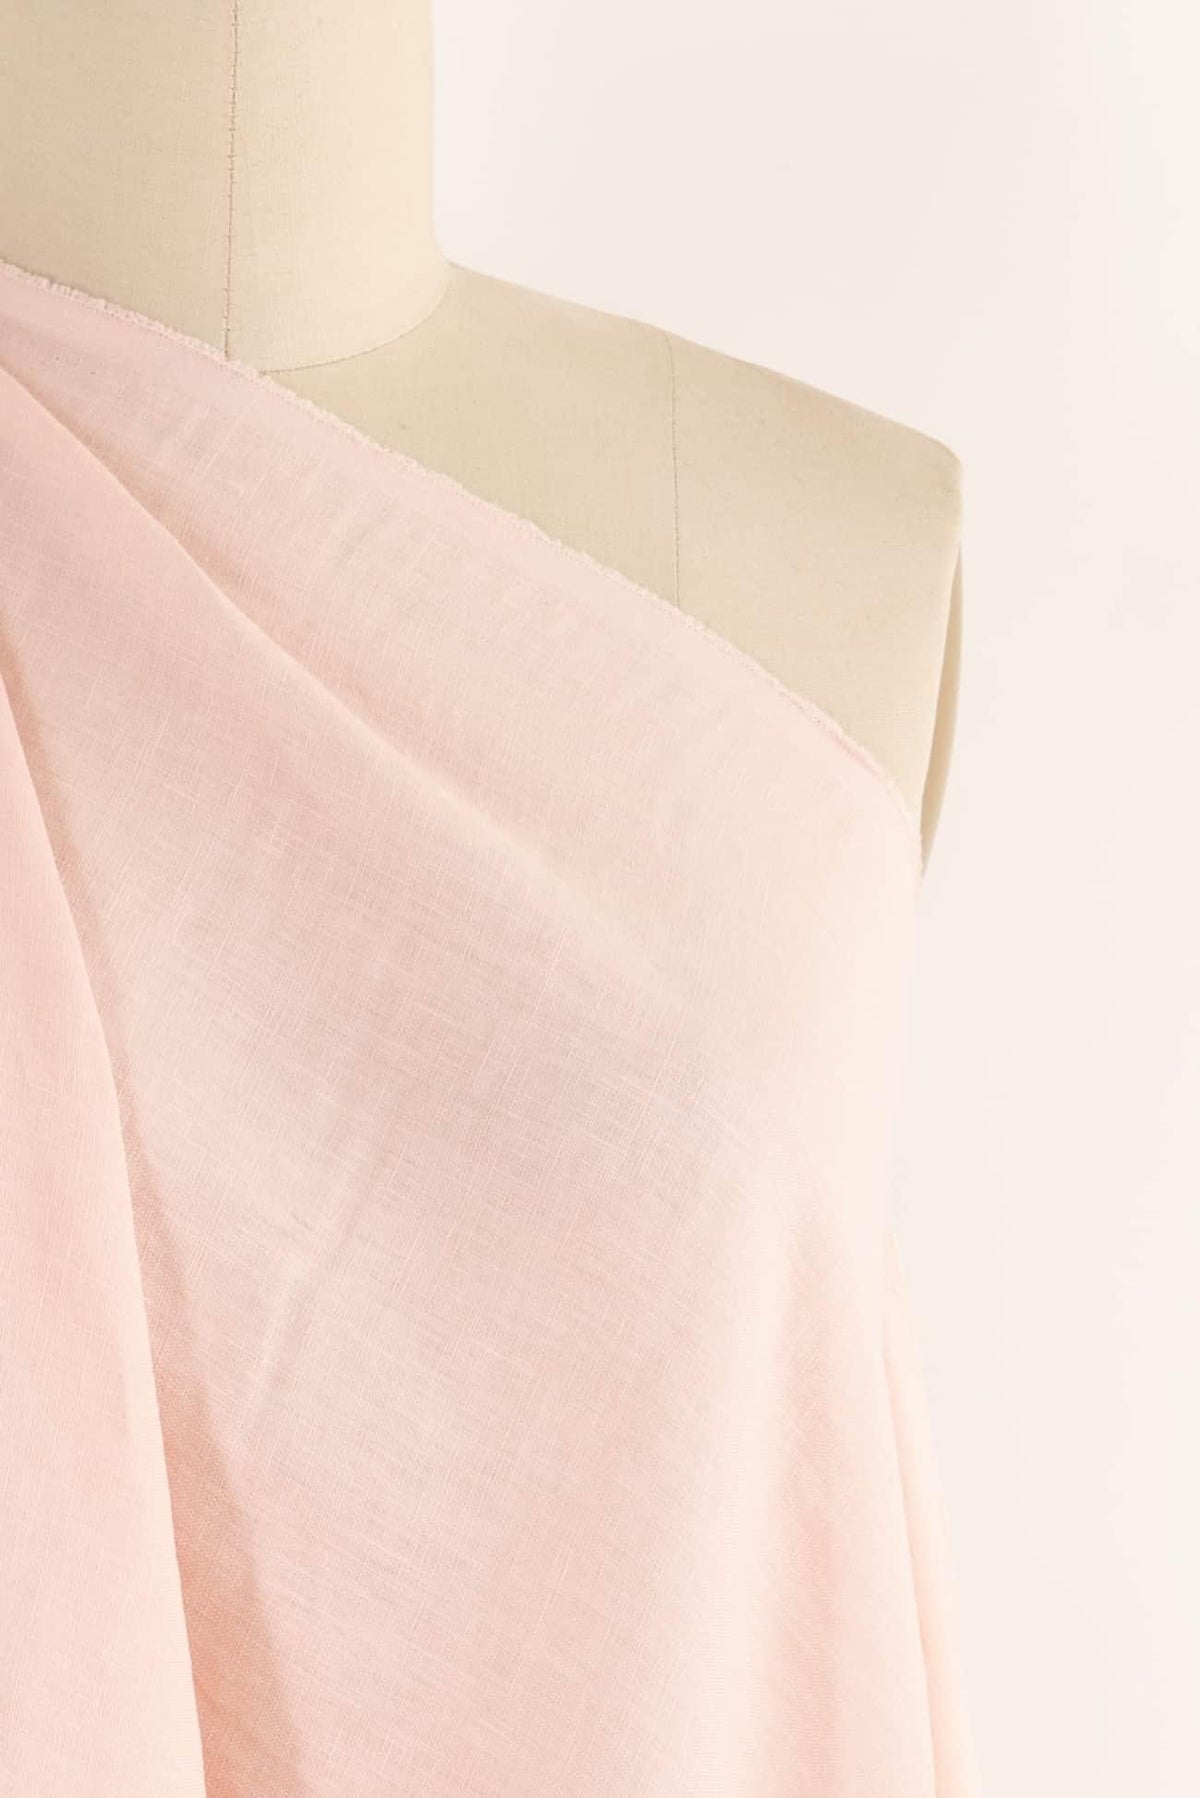 Misty Rose Linen Woven - Marcy Tilton Fabrics